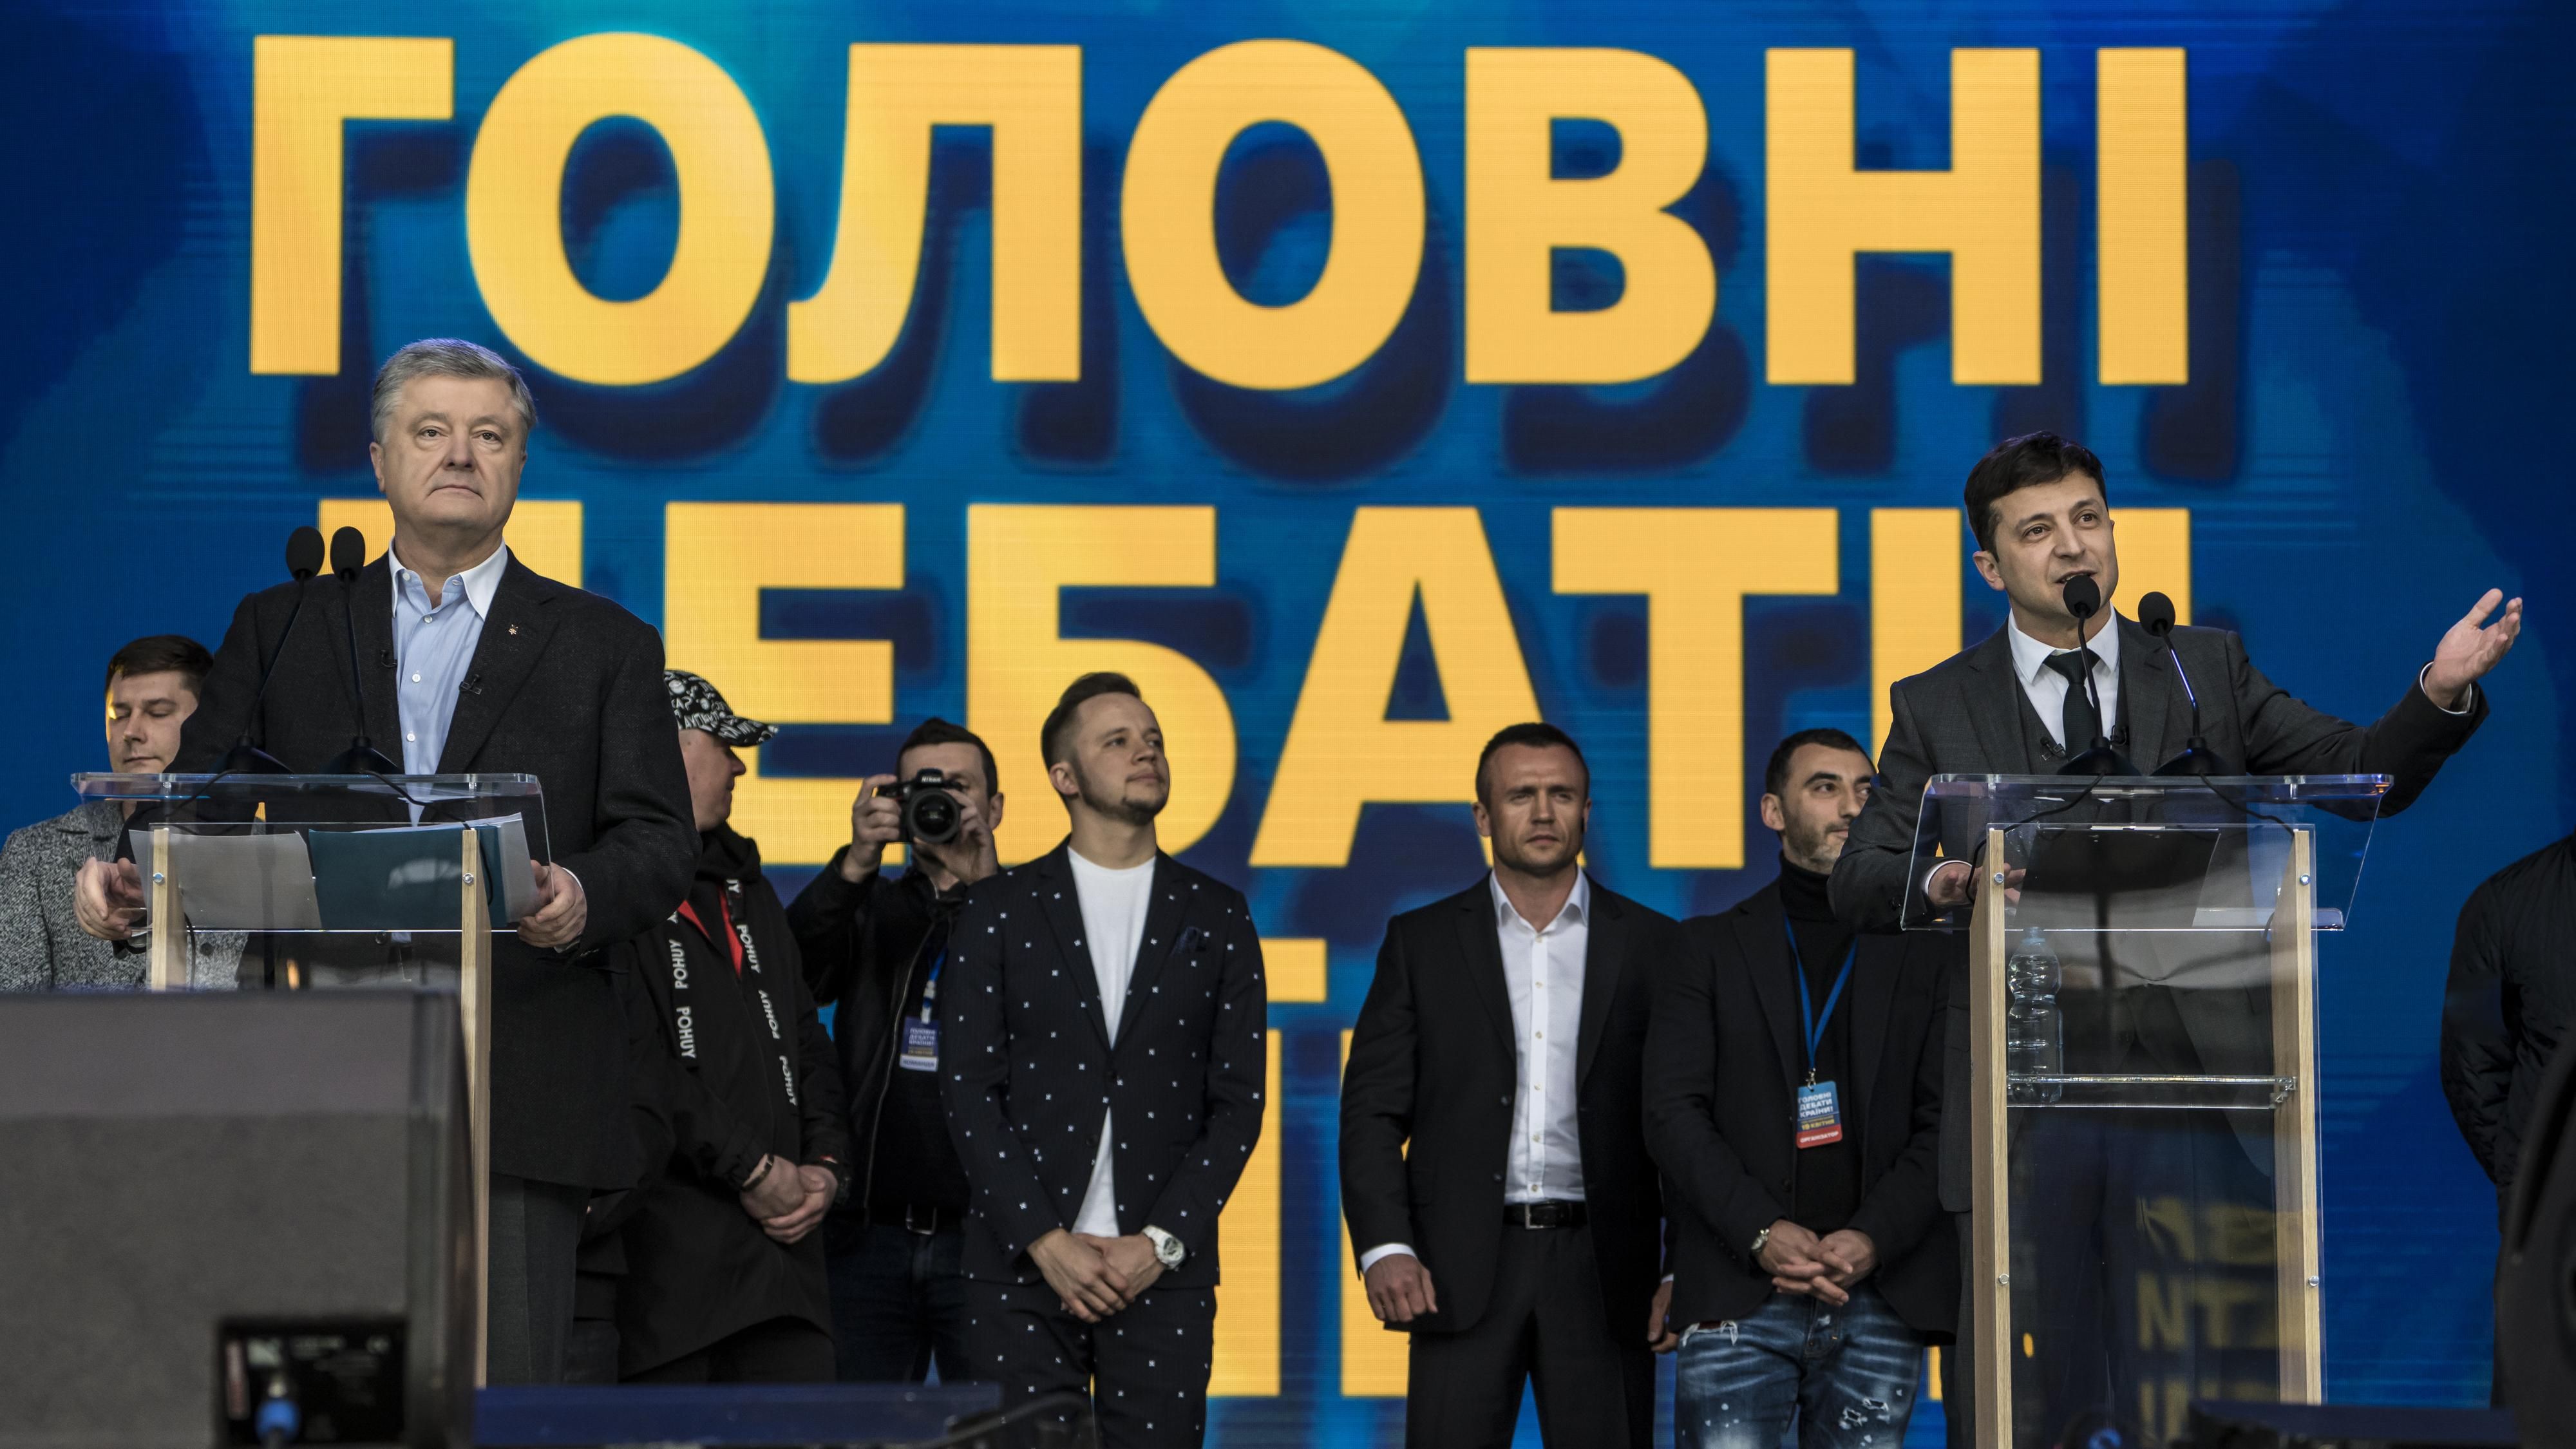 Дебаты Порошенко - Зеленского 19.04.2019 на стадионе - реакция украинском